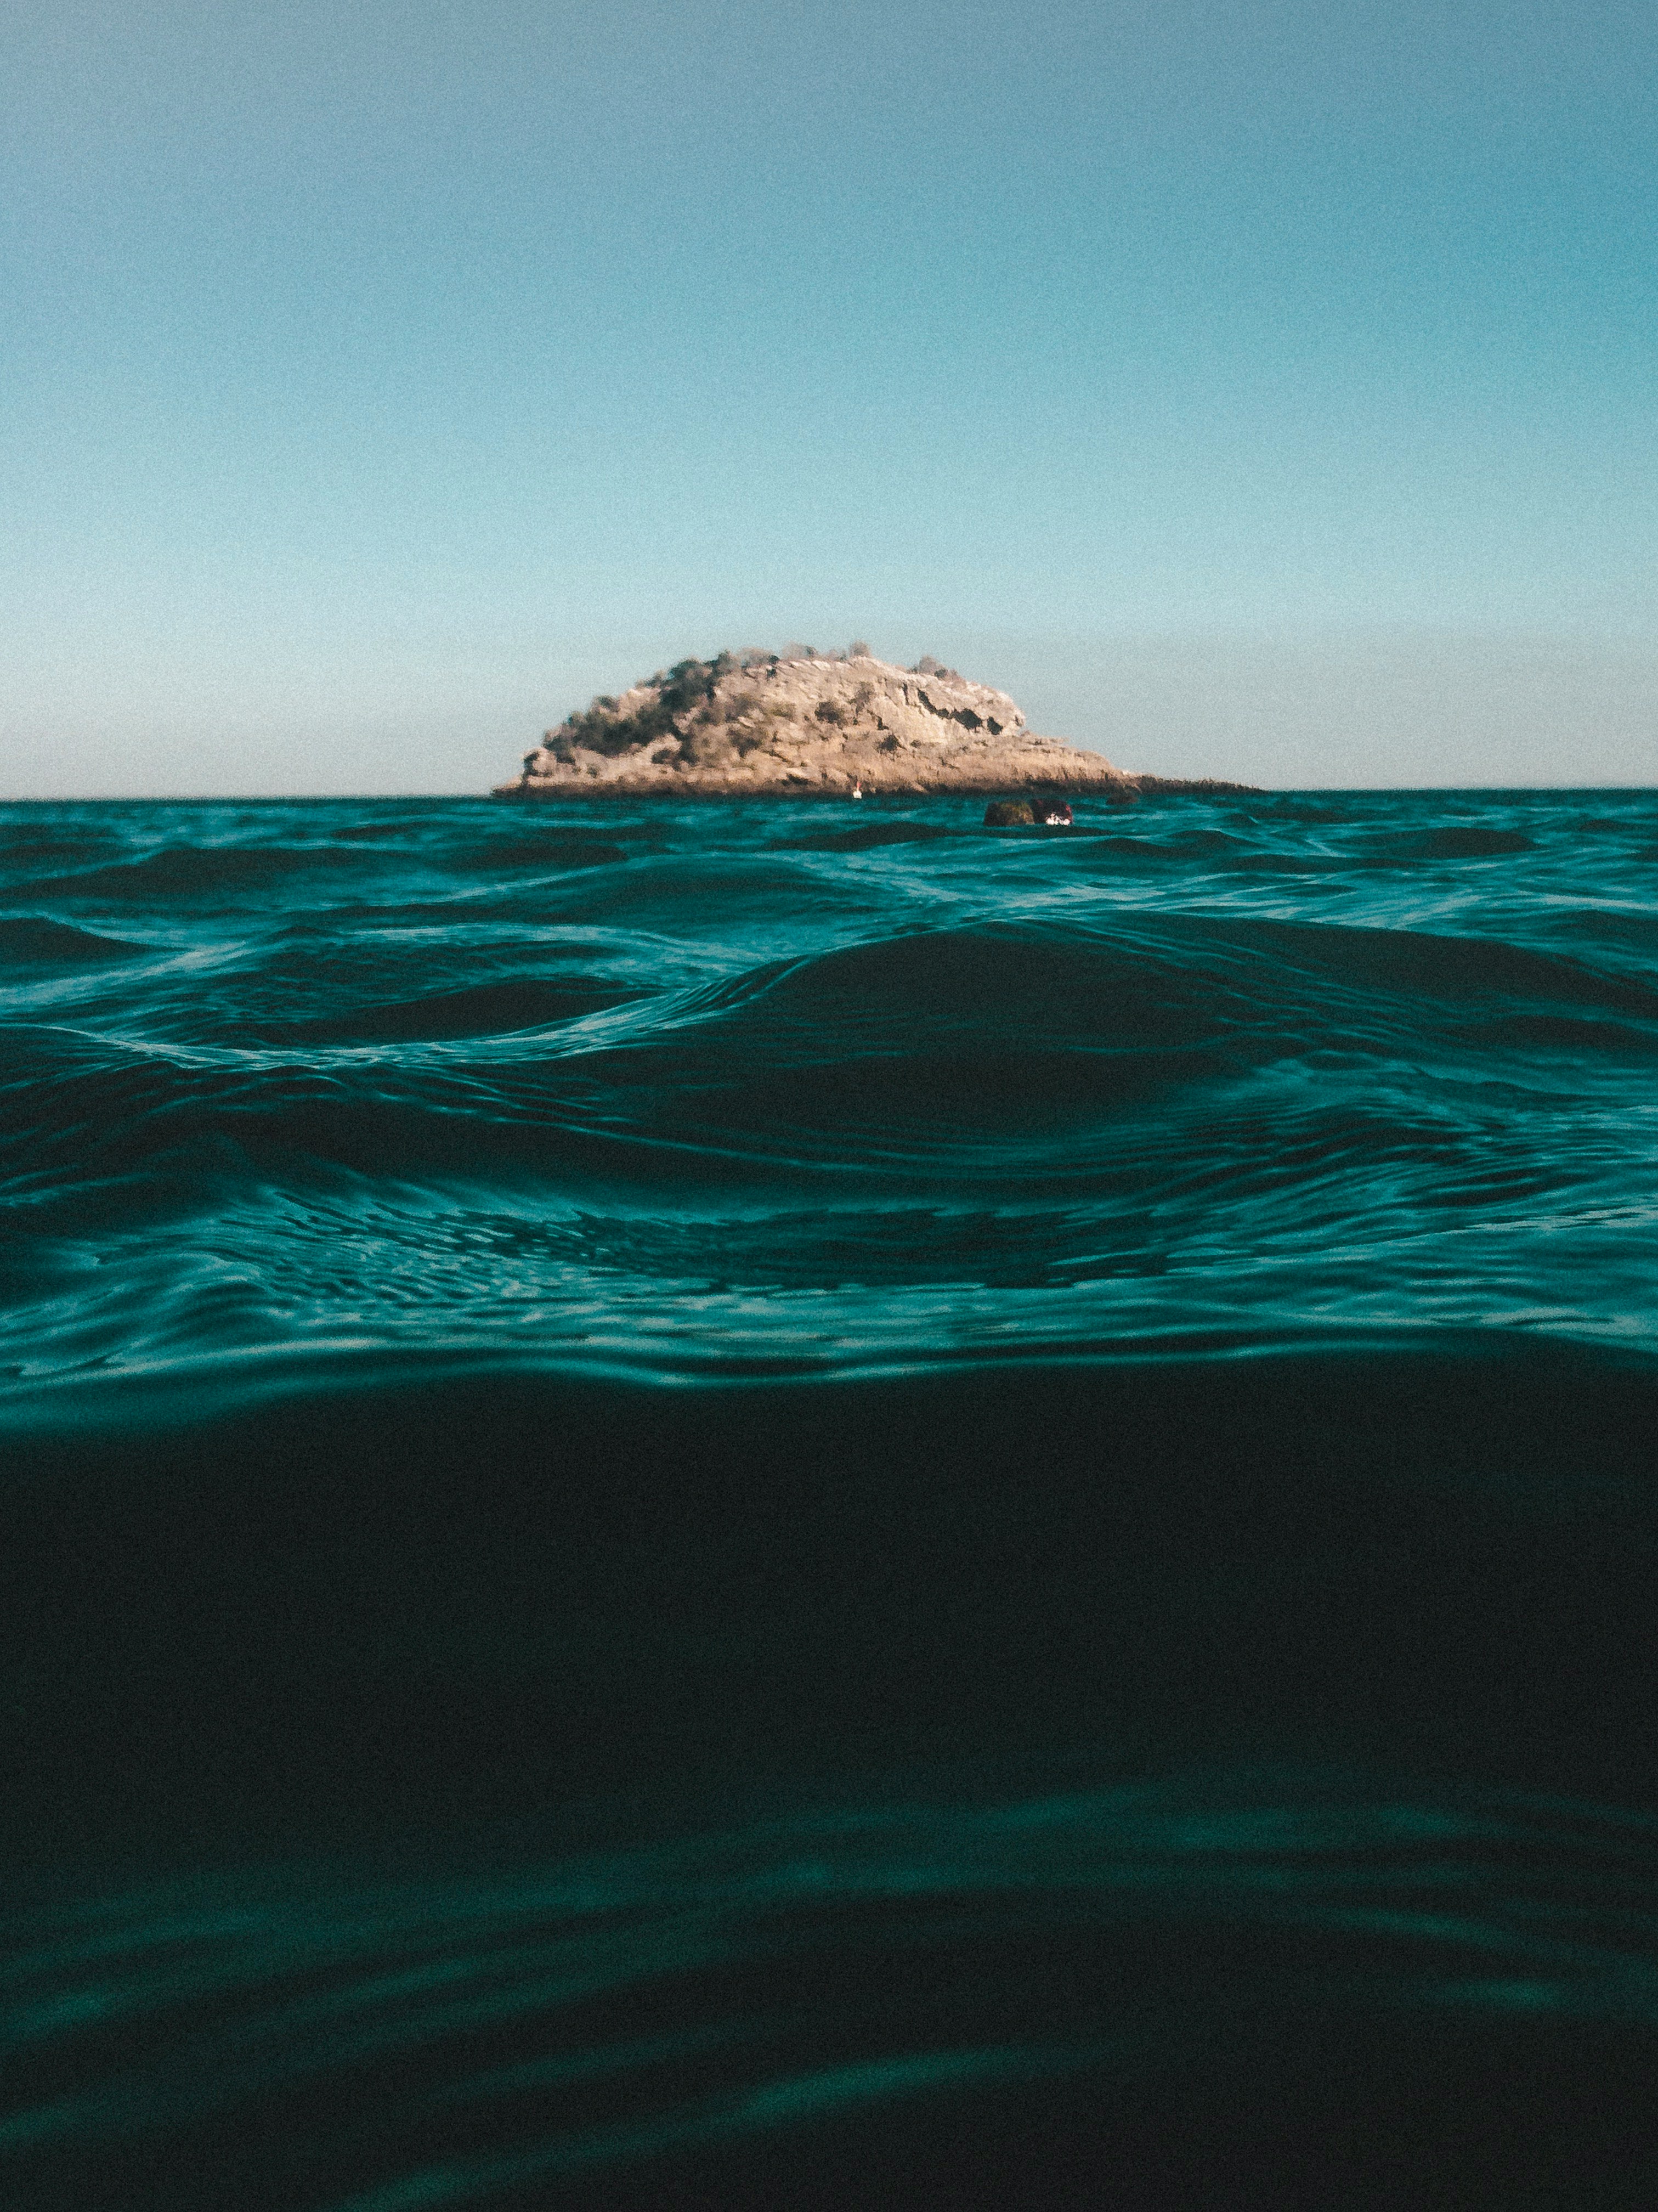 islet on ocean during daytim